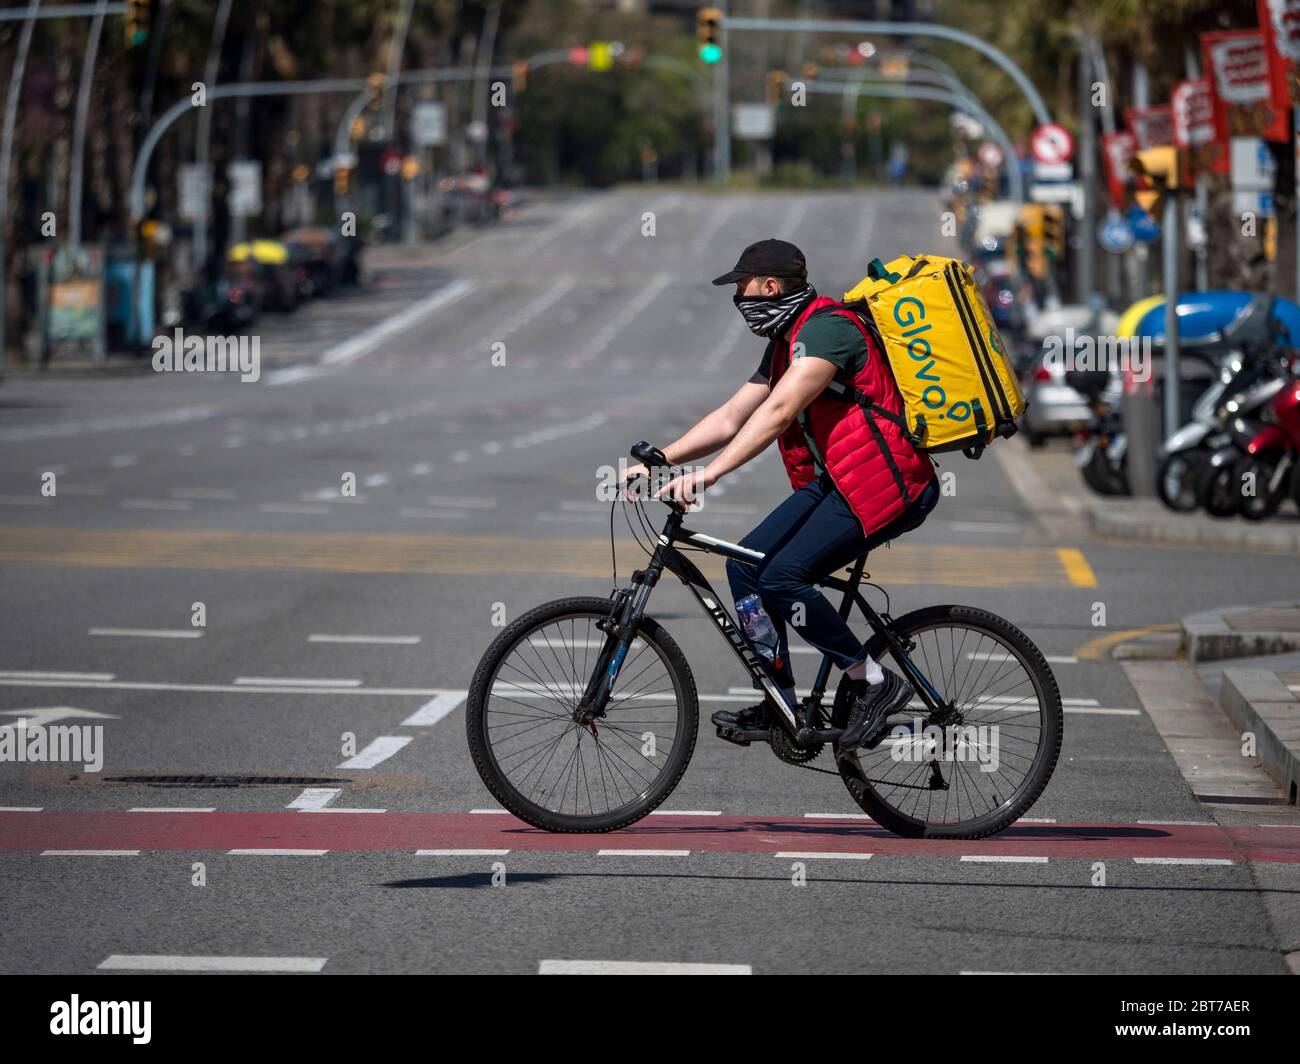 Ein Mann, der Lebensmittel liefert, fährt während des Alarmzustands wegen einer Coronavirus-Pandemie eine Straße in Barcelona mit dem Fahrrad entlang. Katalonien (Spanien), Europa Stockfoto